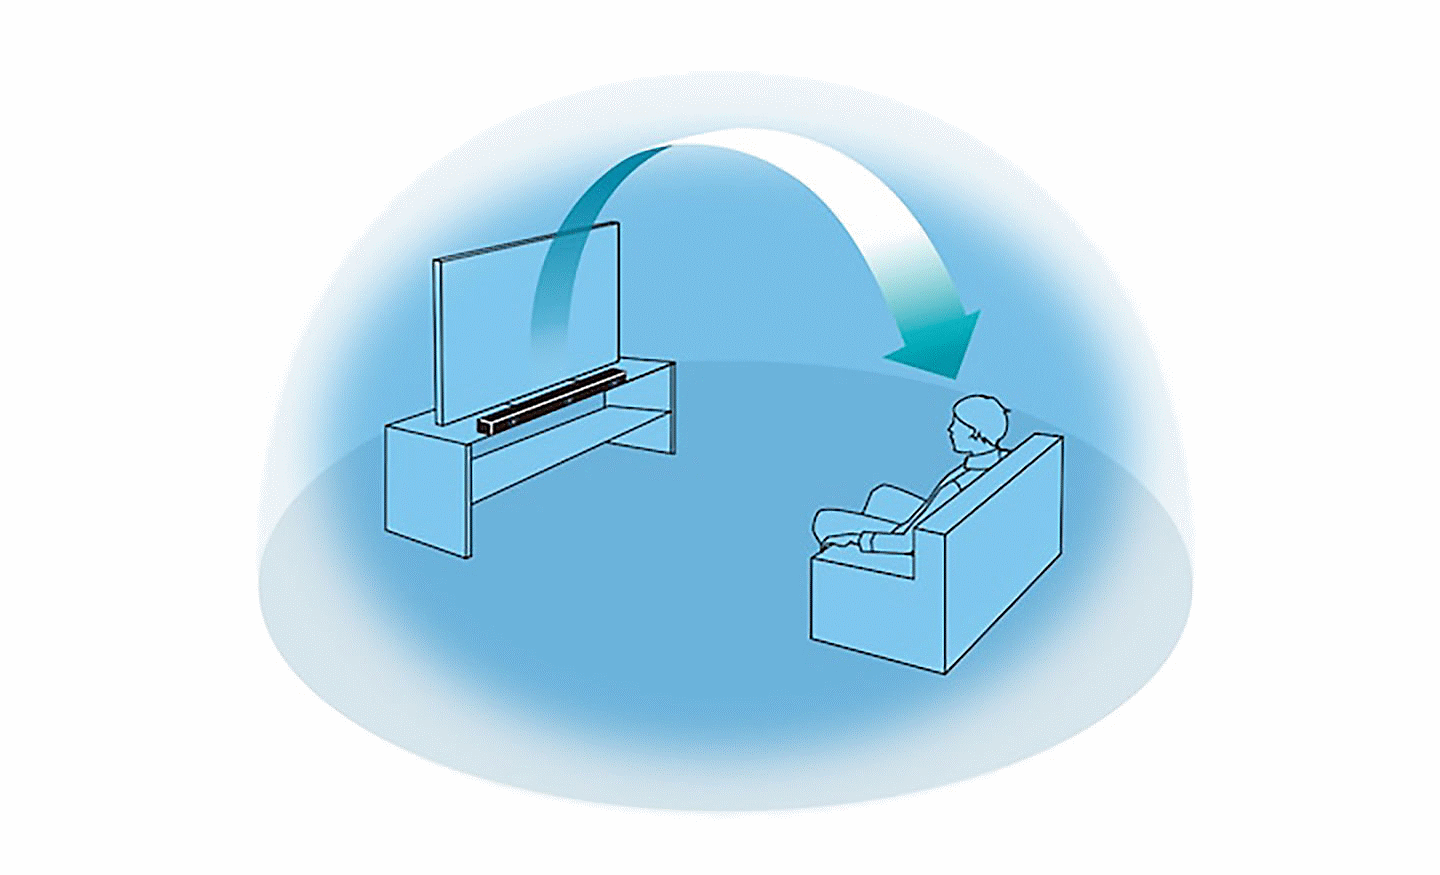 Obrázok modrej kupoly s osobou, ktorá sedí pred televízorom a reproduktorový panel vo vnútri, jedna šípka mieri od reproduktorového panelu k osobe